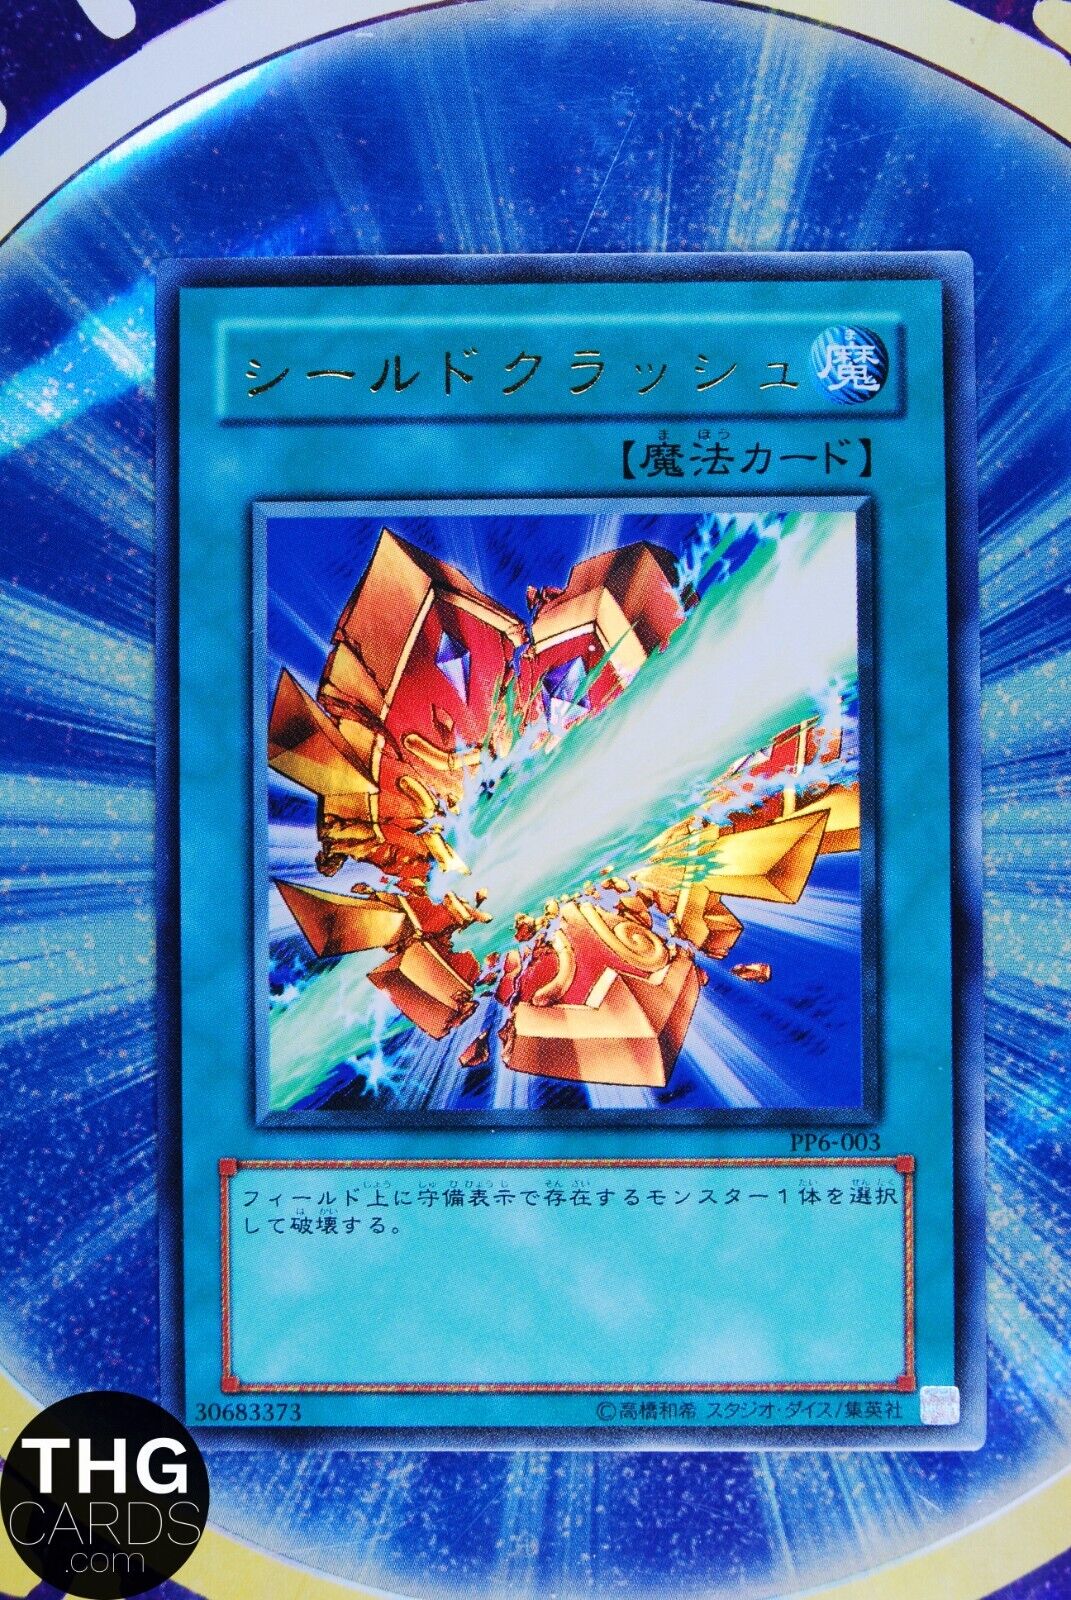 Shield Crush PP6-003 Ultra Rare Yugioh Card Japanese